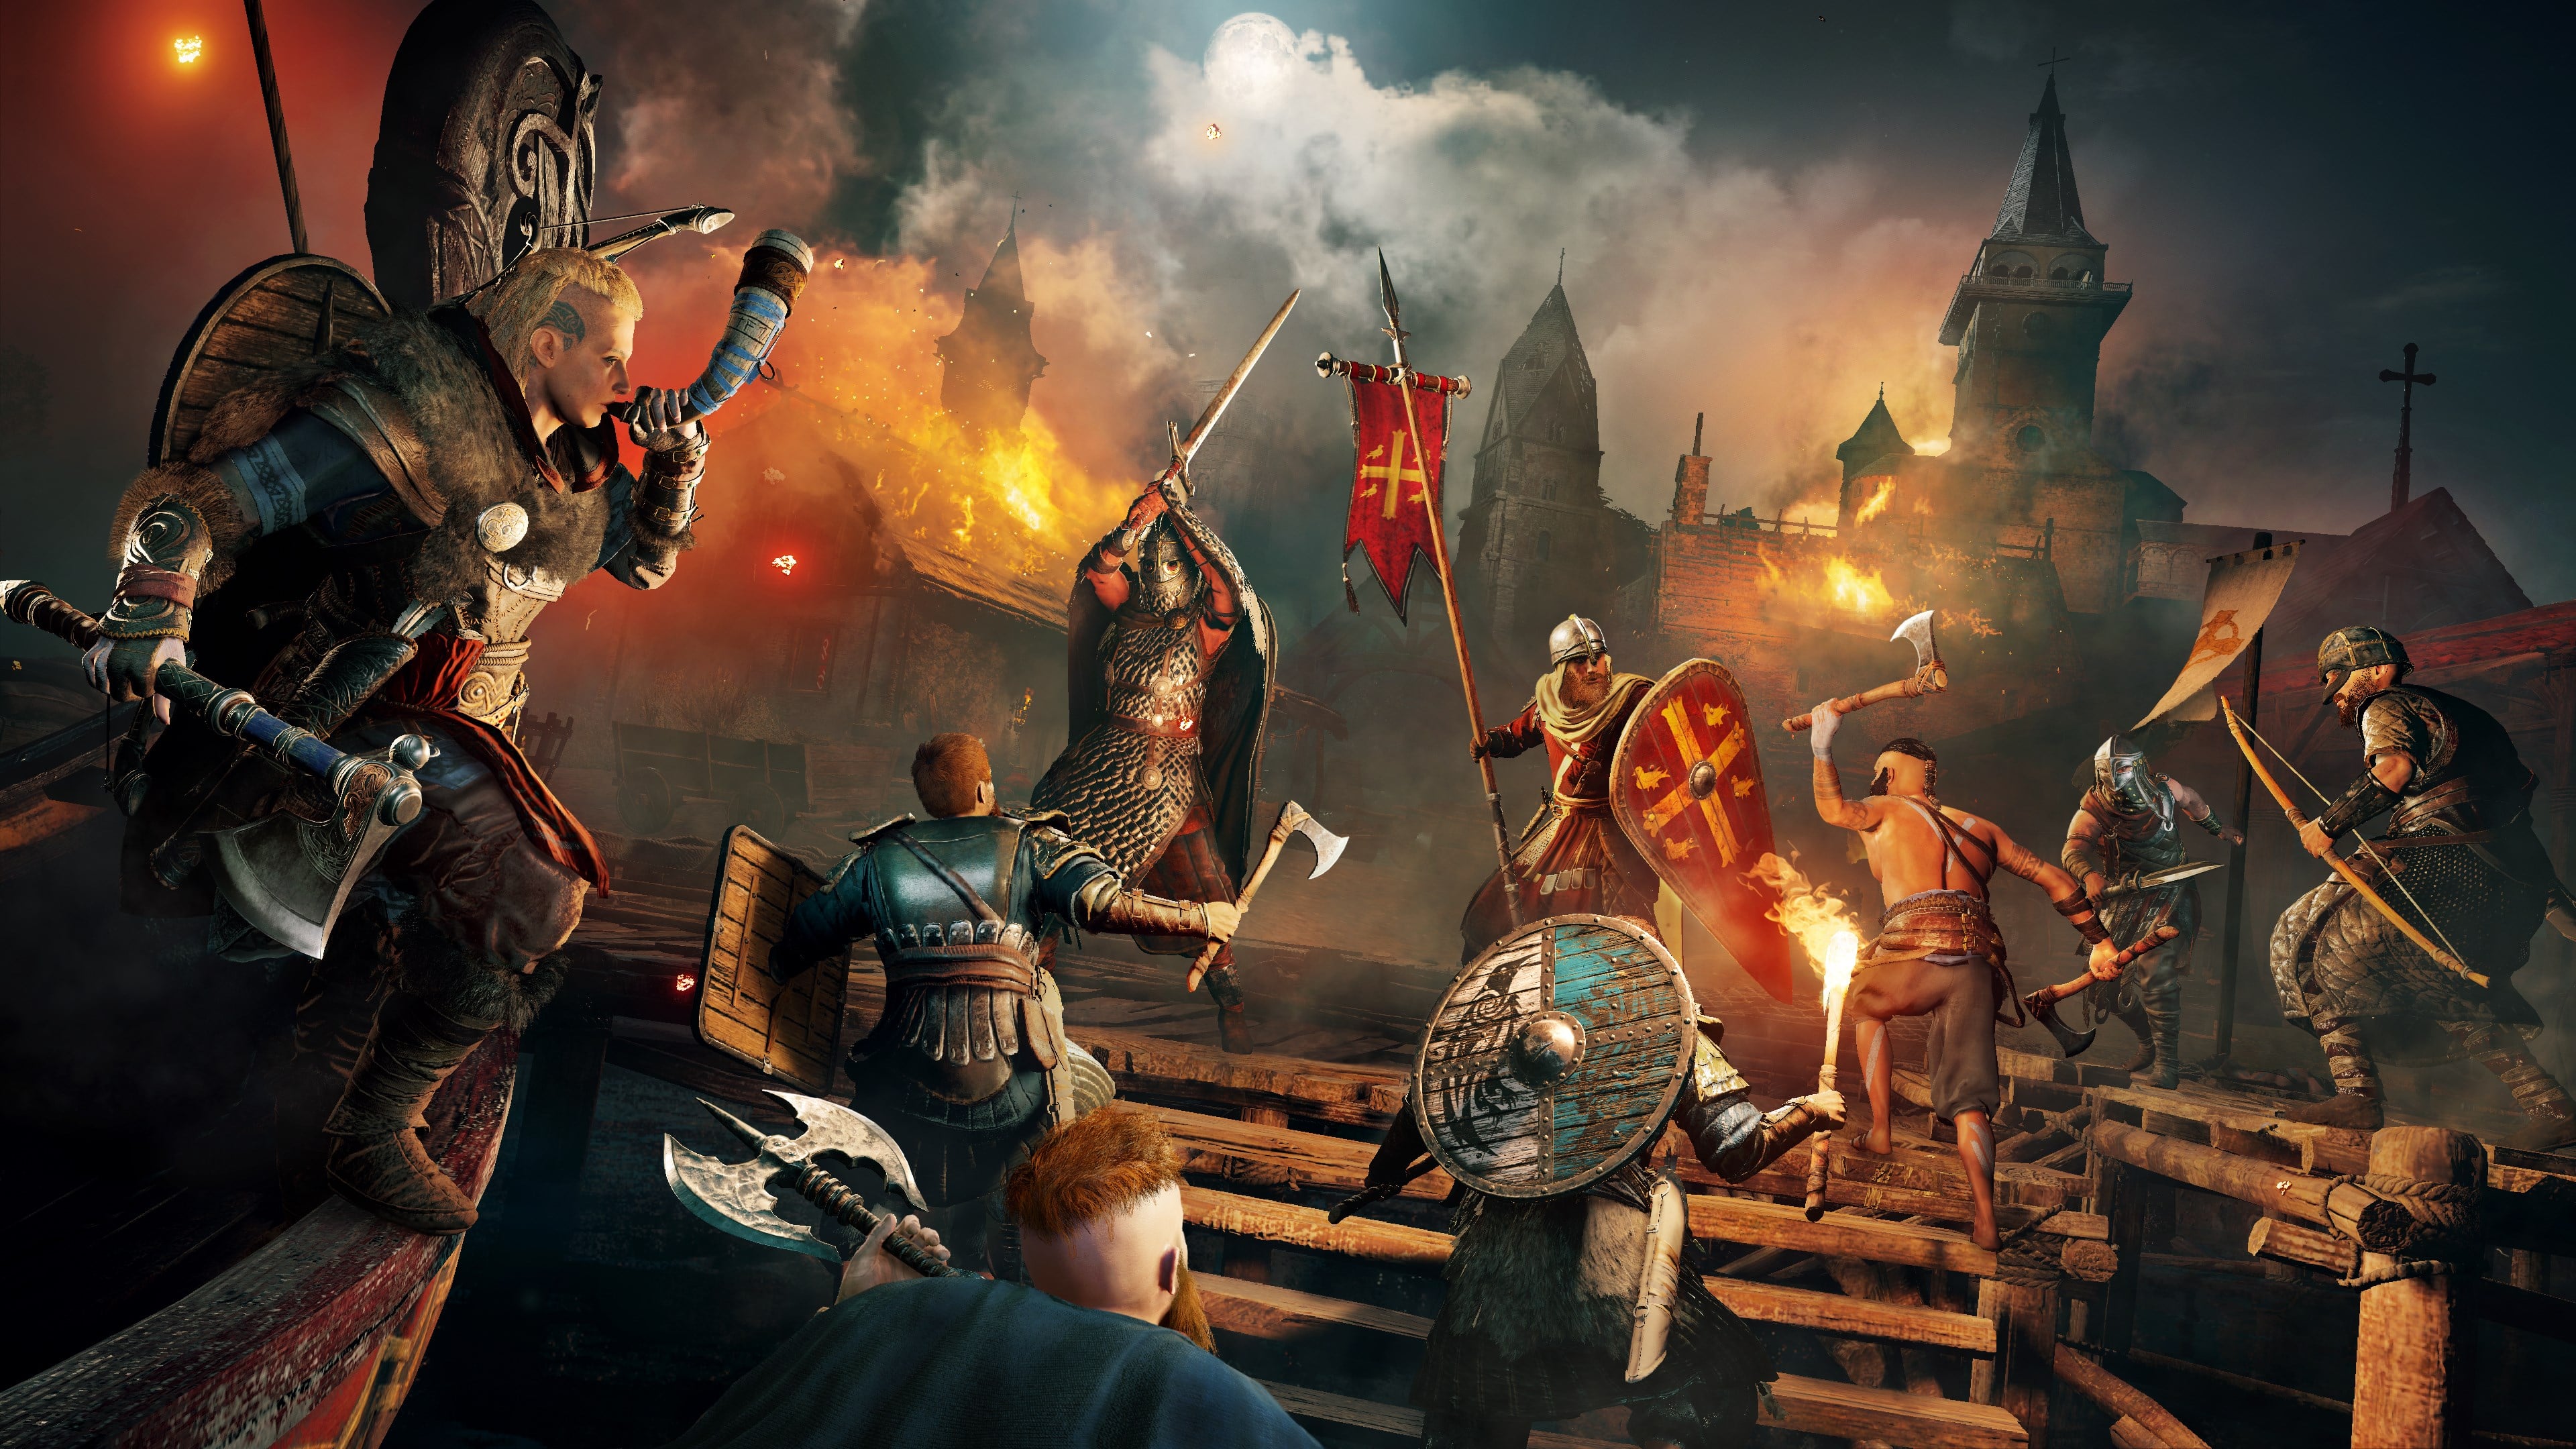 Assassin's Creed Valhalla: Dawn of Ragnarök - Download